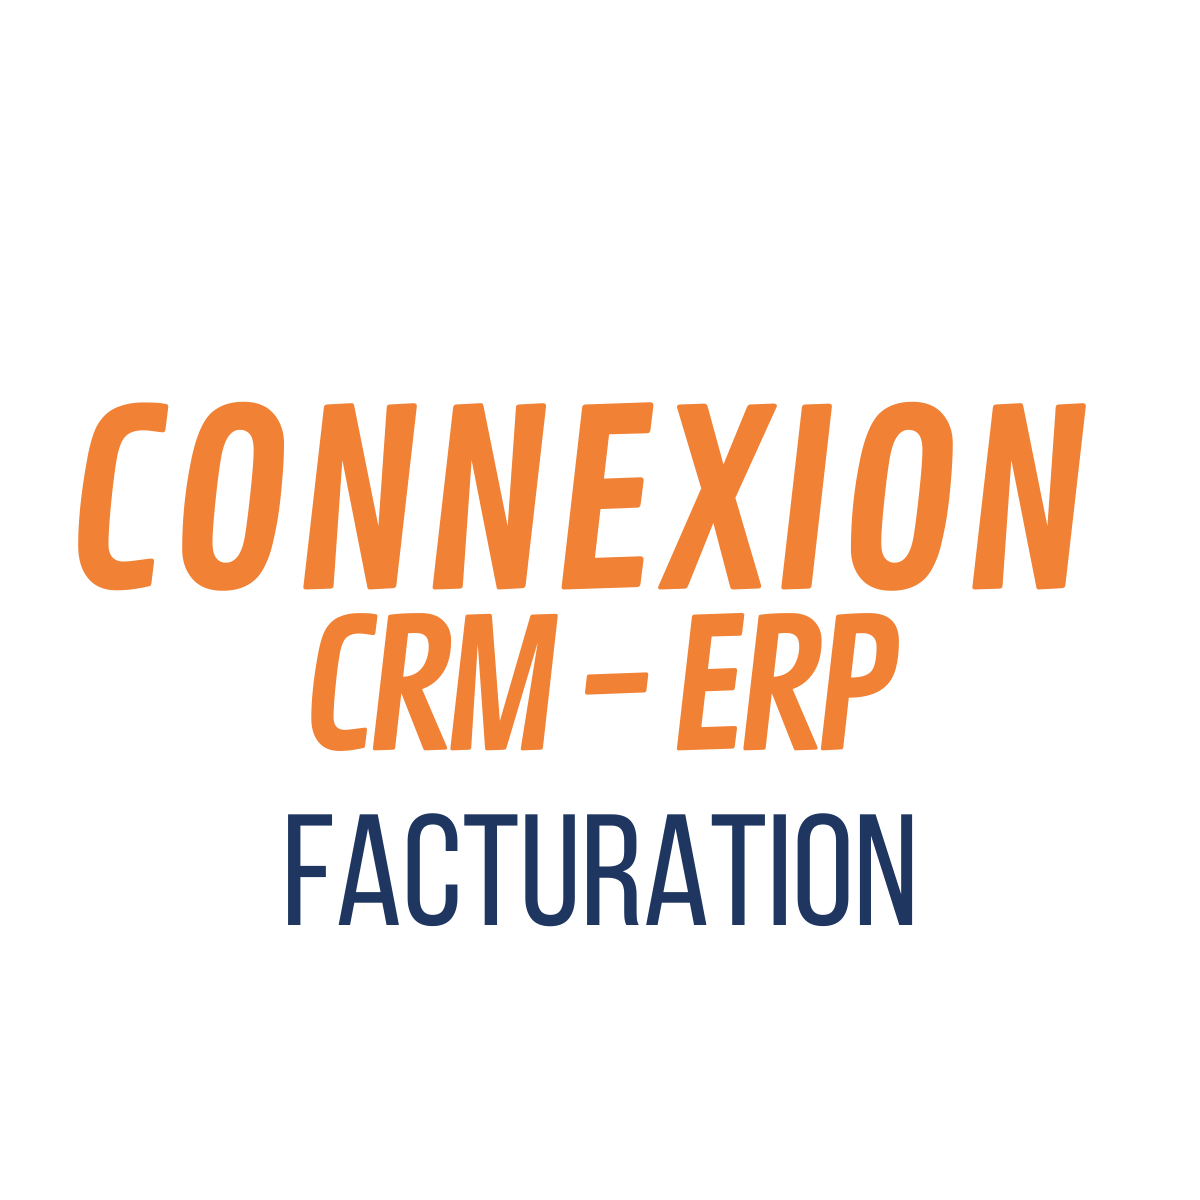 Connexion CRM-ERP Facturation